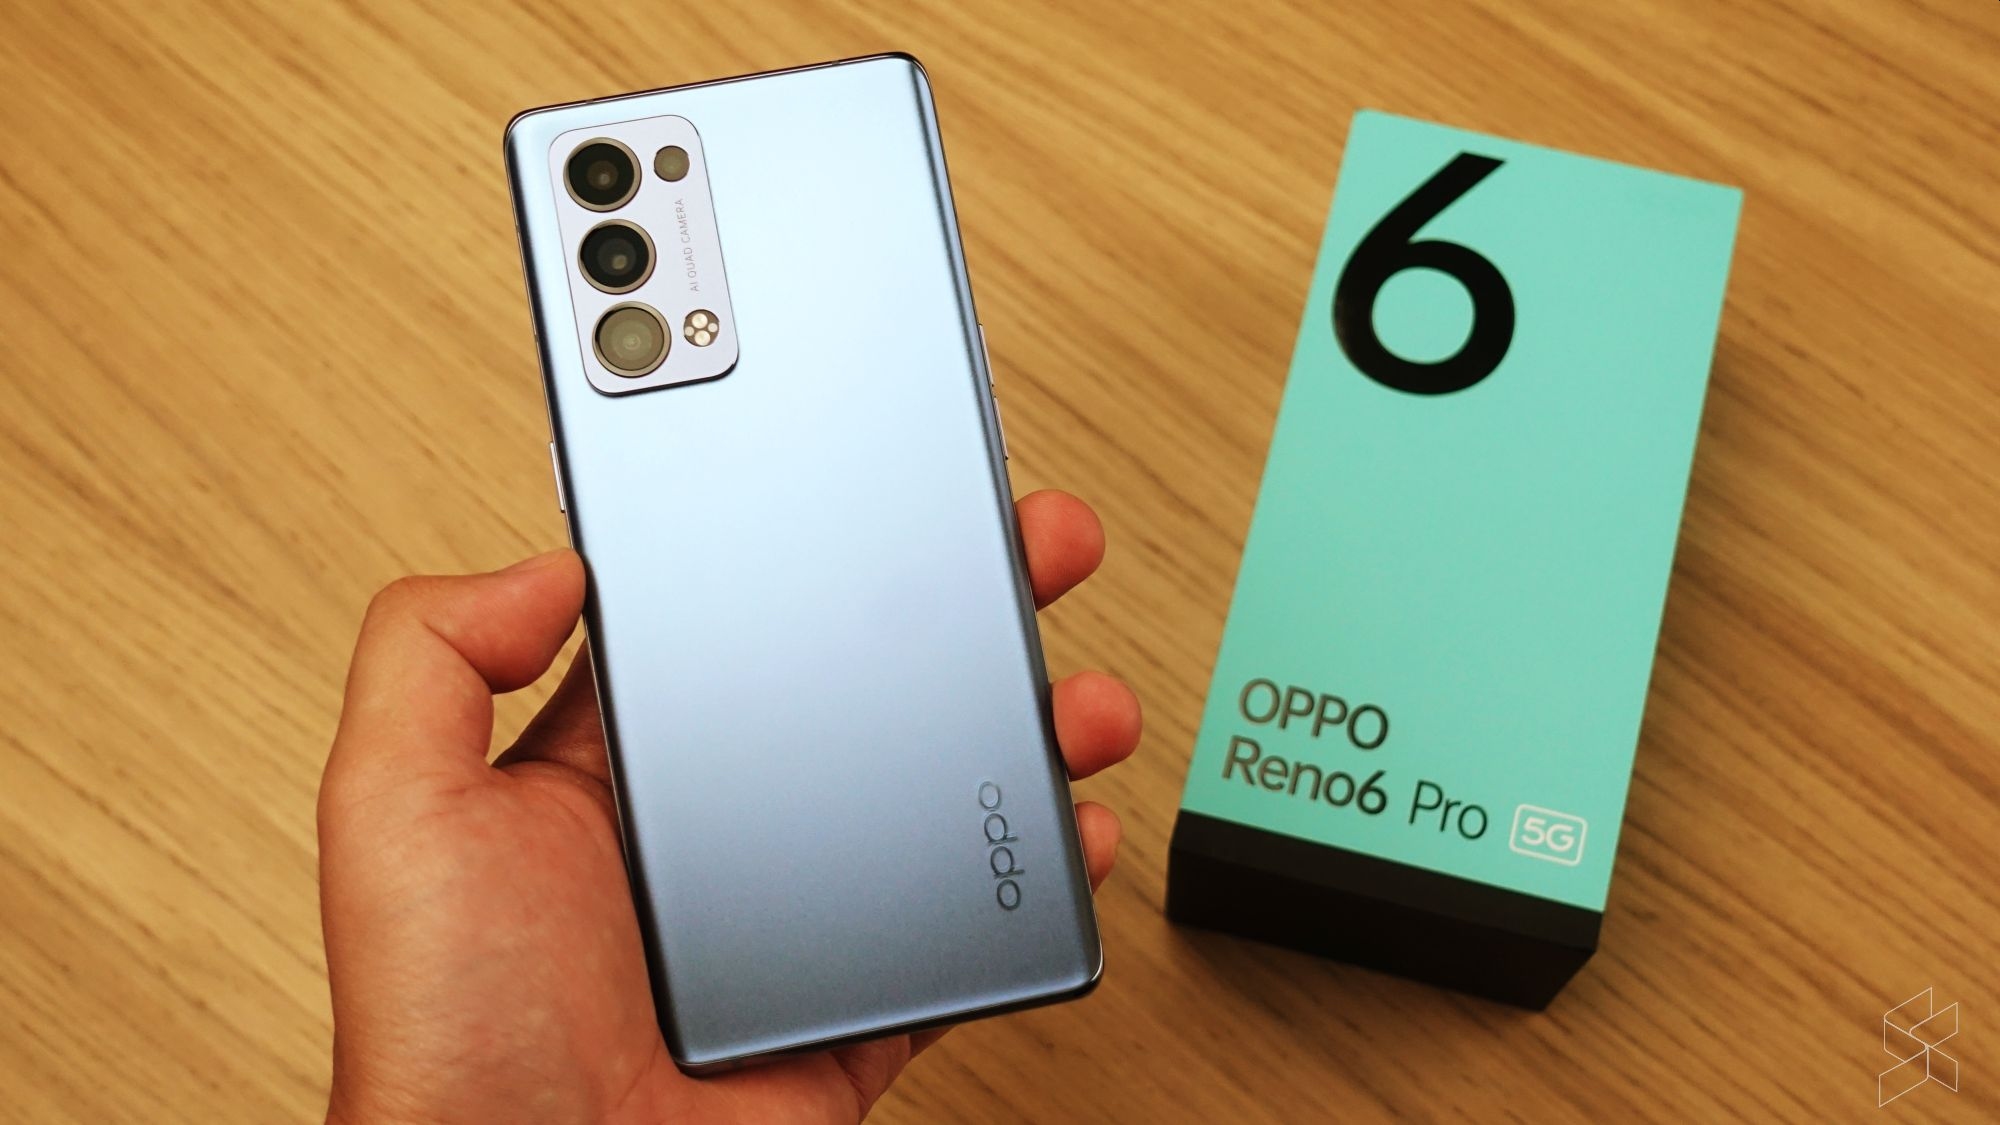 Oppo Reno 6 Pro 5G: Everything you need to know - SoyaCincau